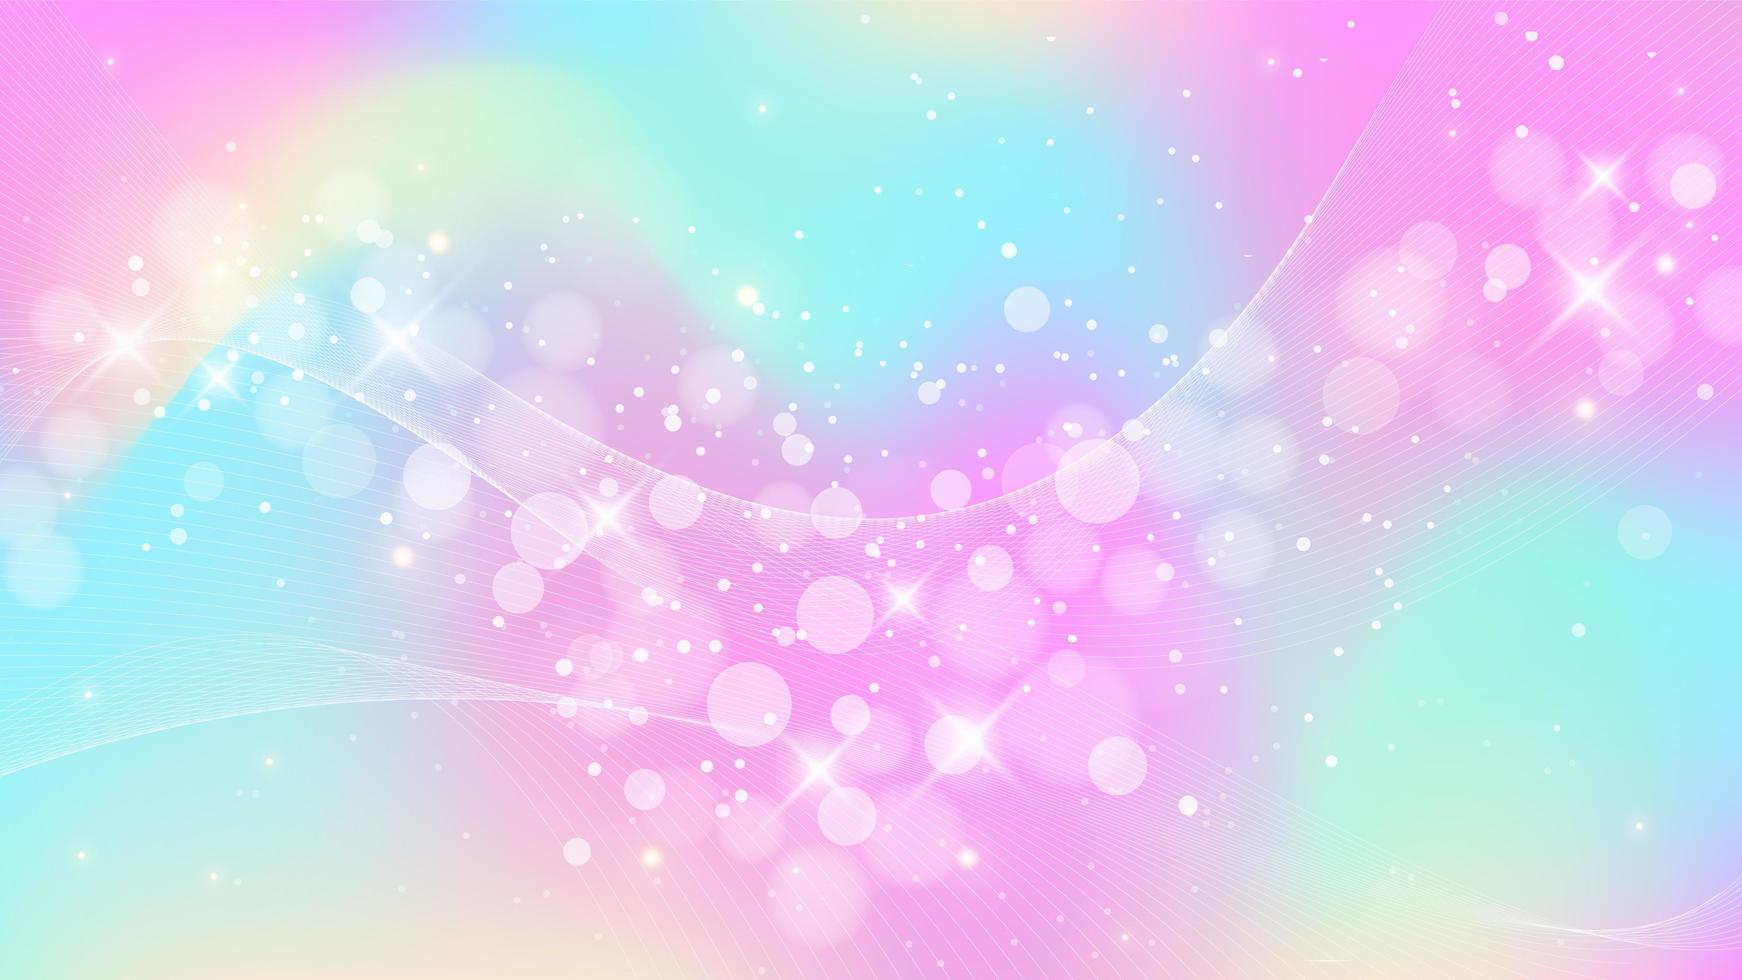 fundo de fantasia de arco-íris. ilustração holográfica em tons pastel. céu de unicórnio multicolorido com estrelas e bokeh. vetor